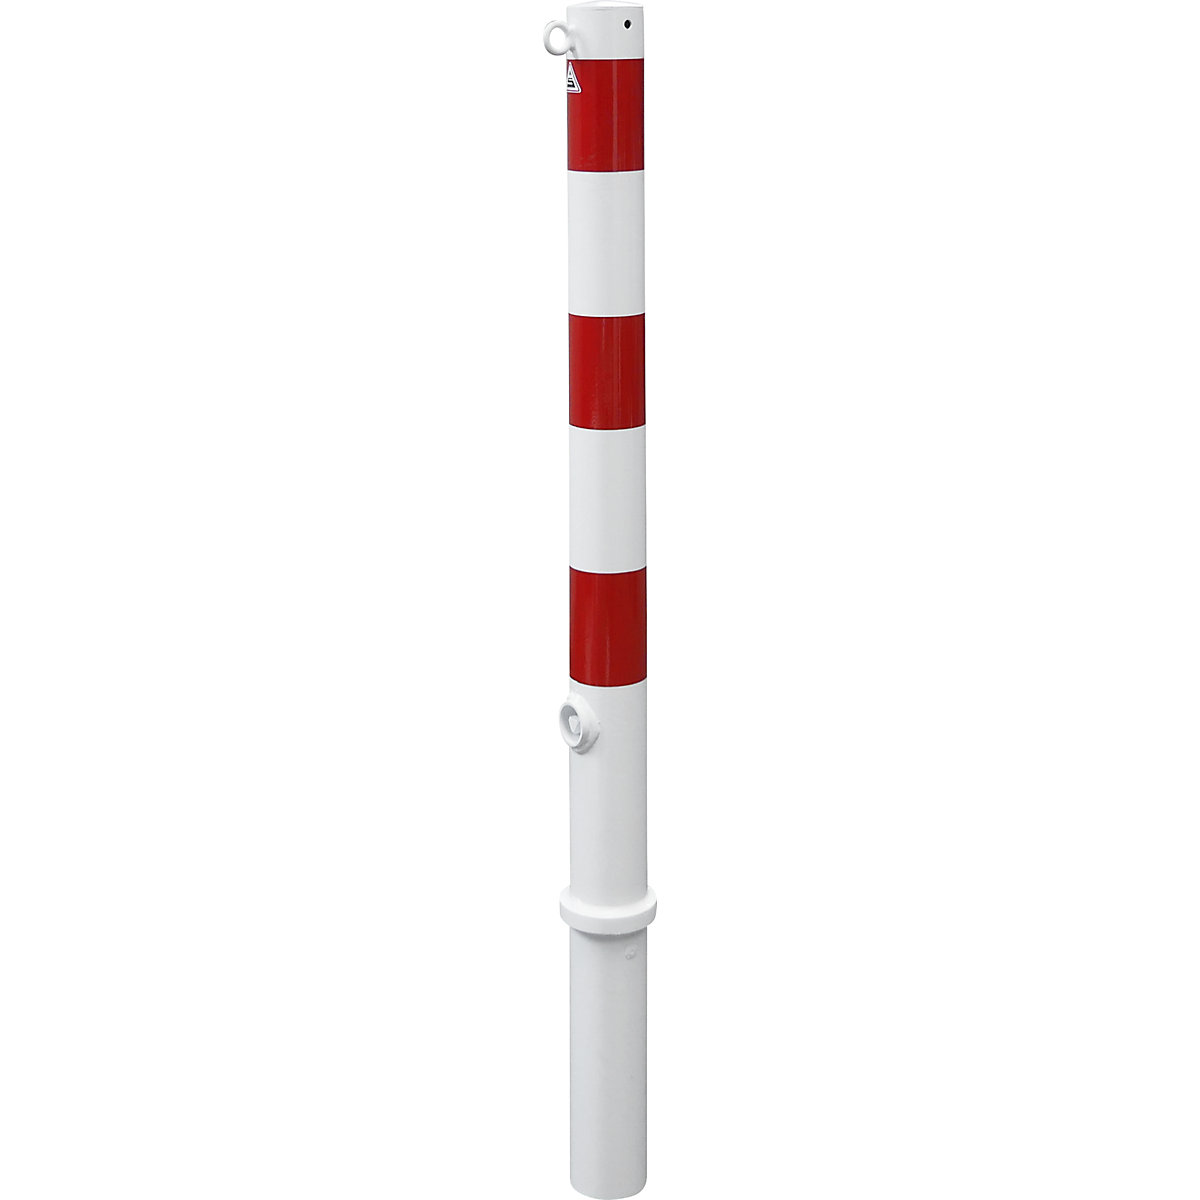 Stupić za ograđivanje, Ø 76 mm, u bijelo / crvenoj boji, s mogućnošću vađenja, s 1 ušicom-3